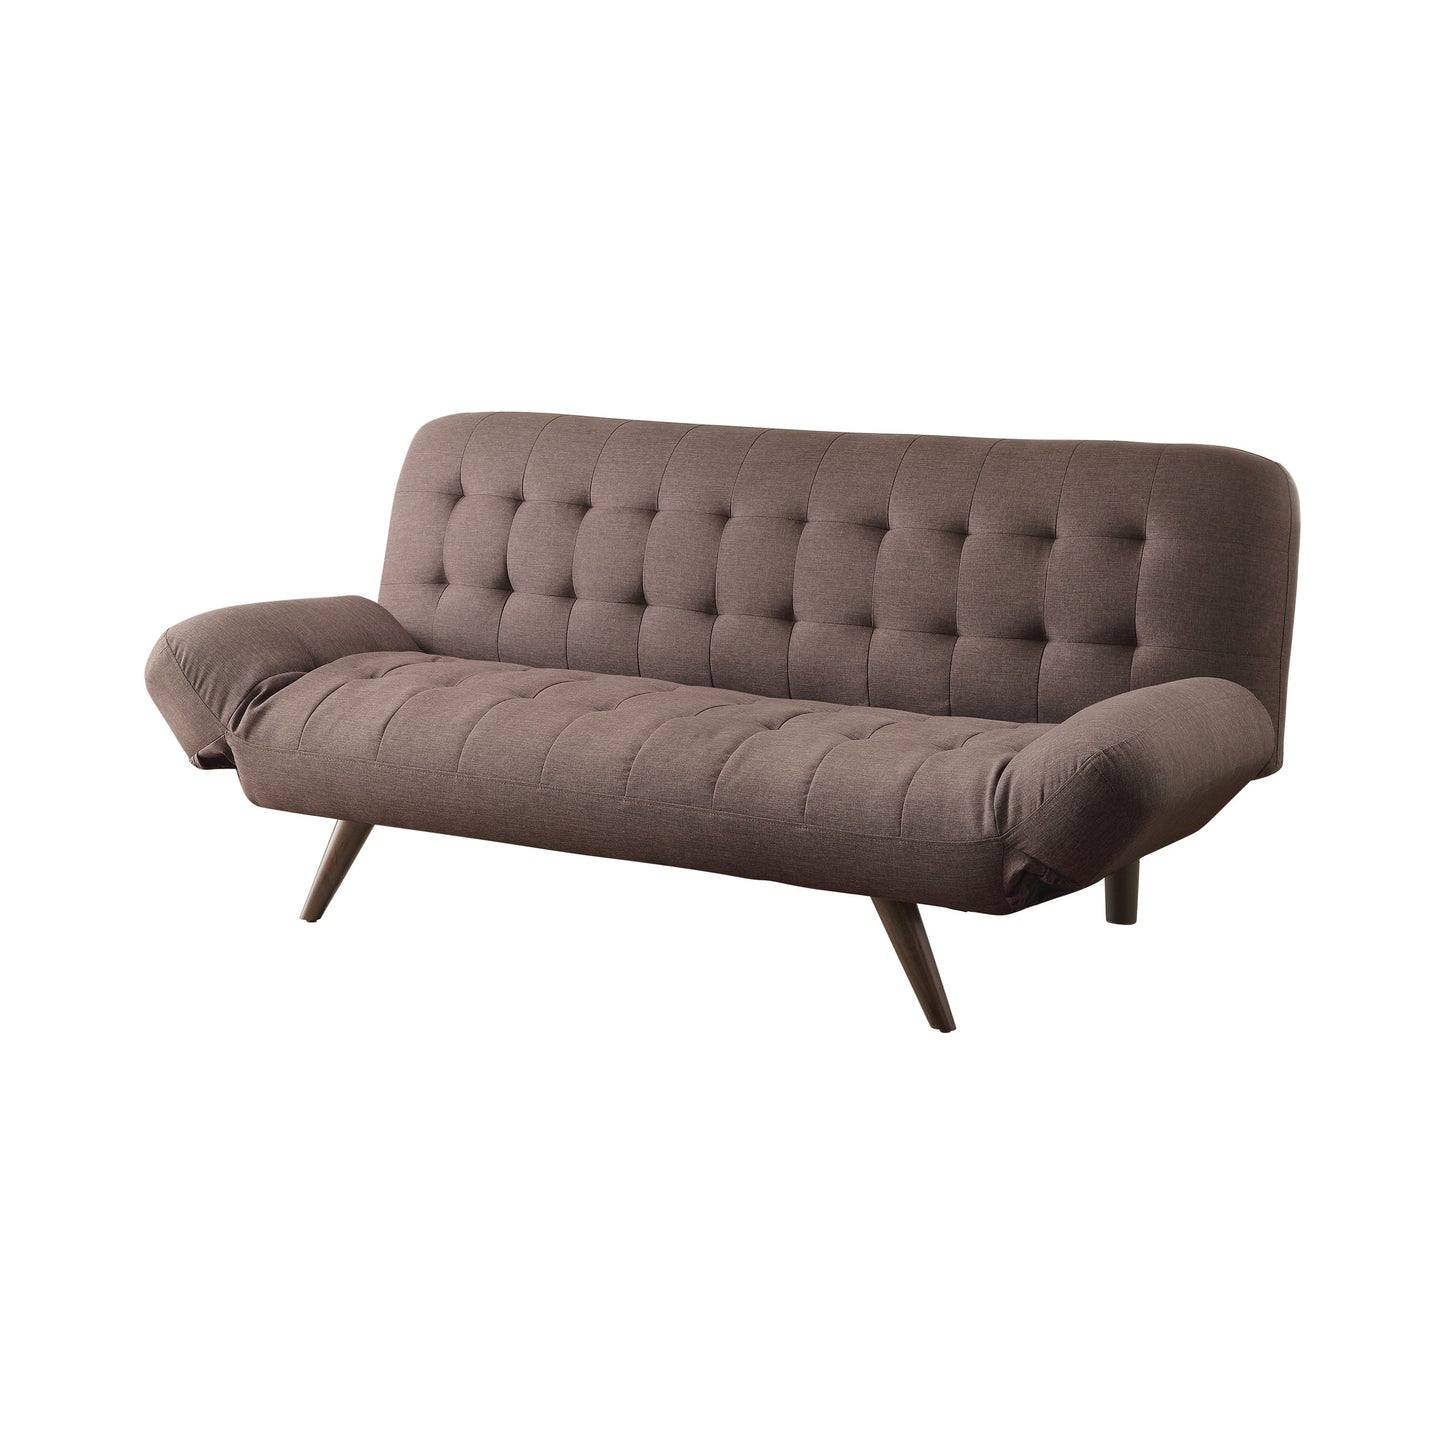 Janet Tufted Sofa Bed with Adjustable Armrest Milk Grey